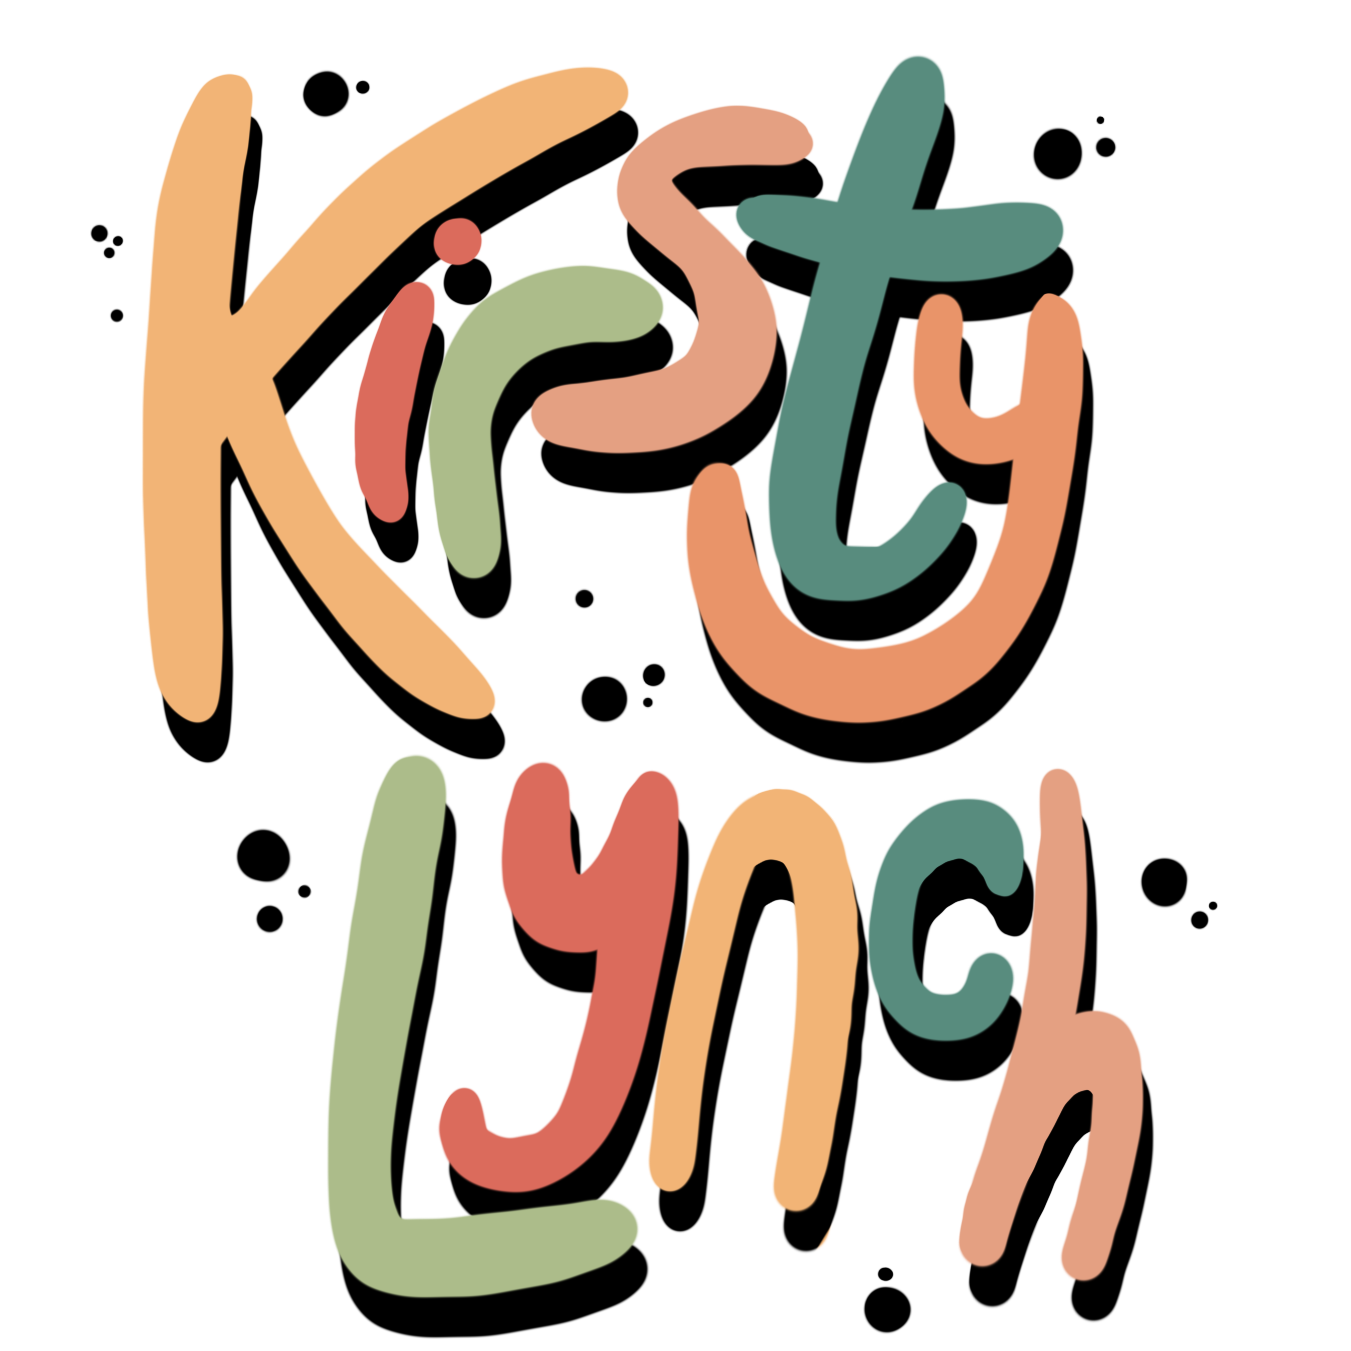 kirsty lynch